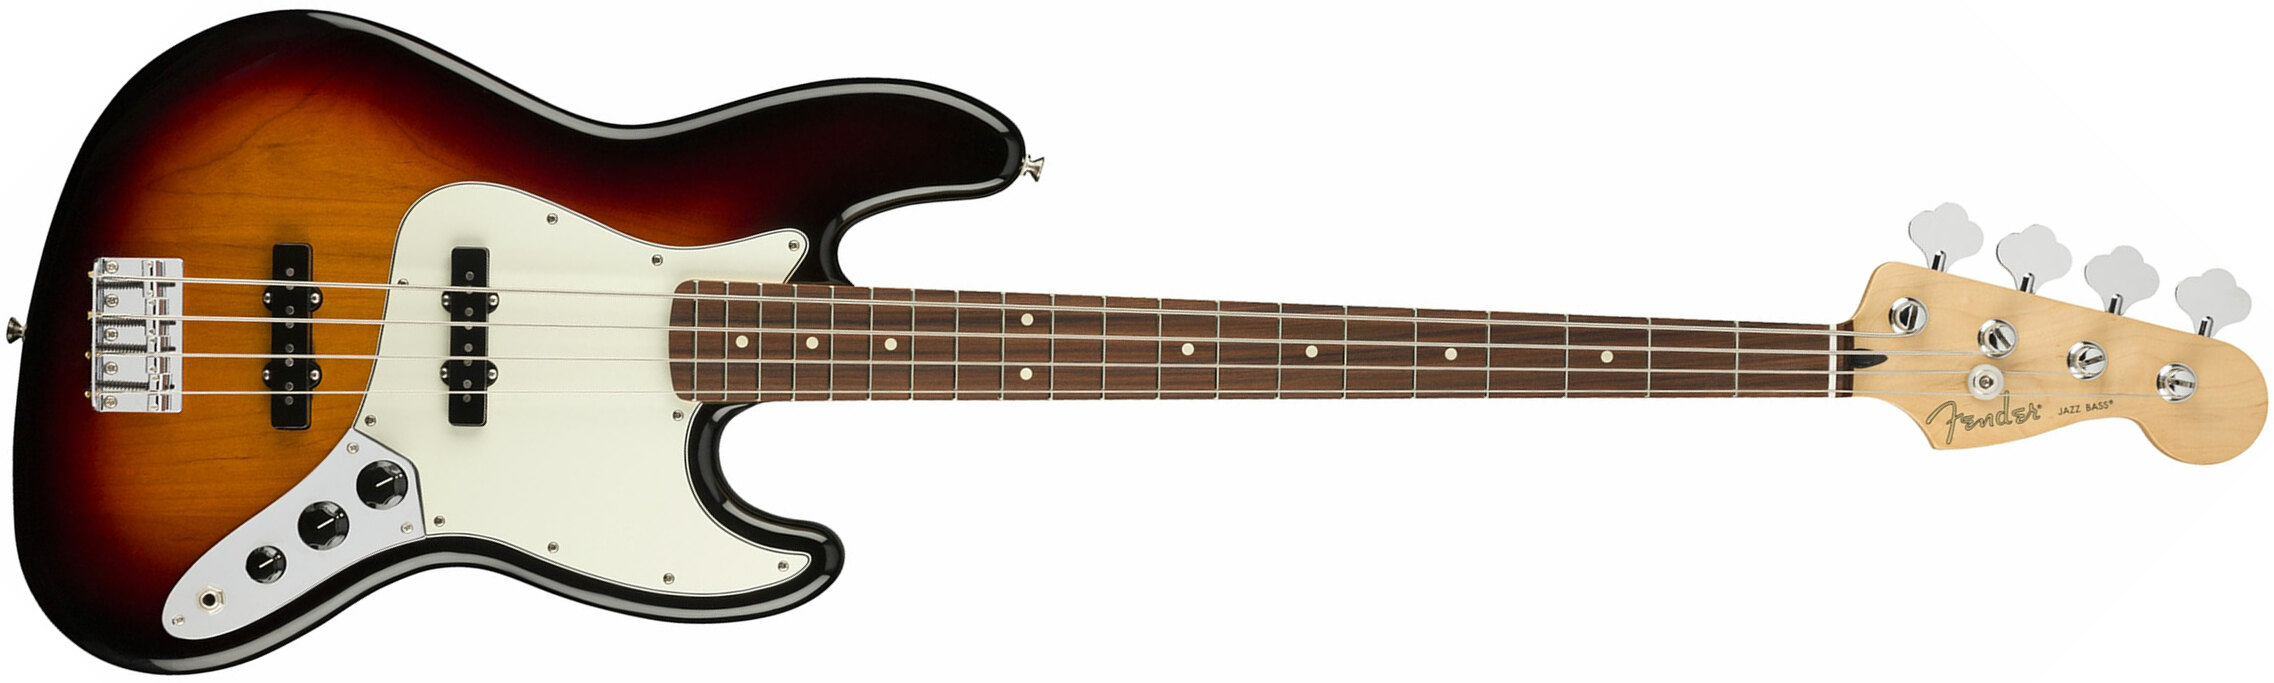 Fender Jazz Bass Player Mex Pf - 3-color Sunburst - Basse Électrique Solid Body - Main picture